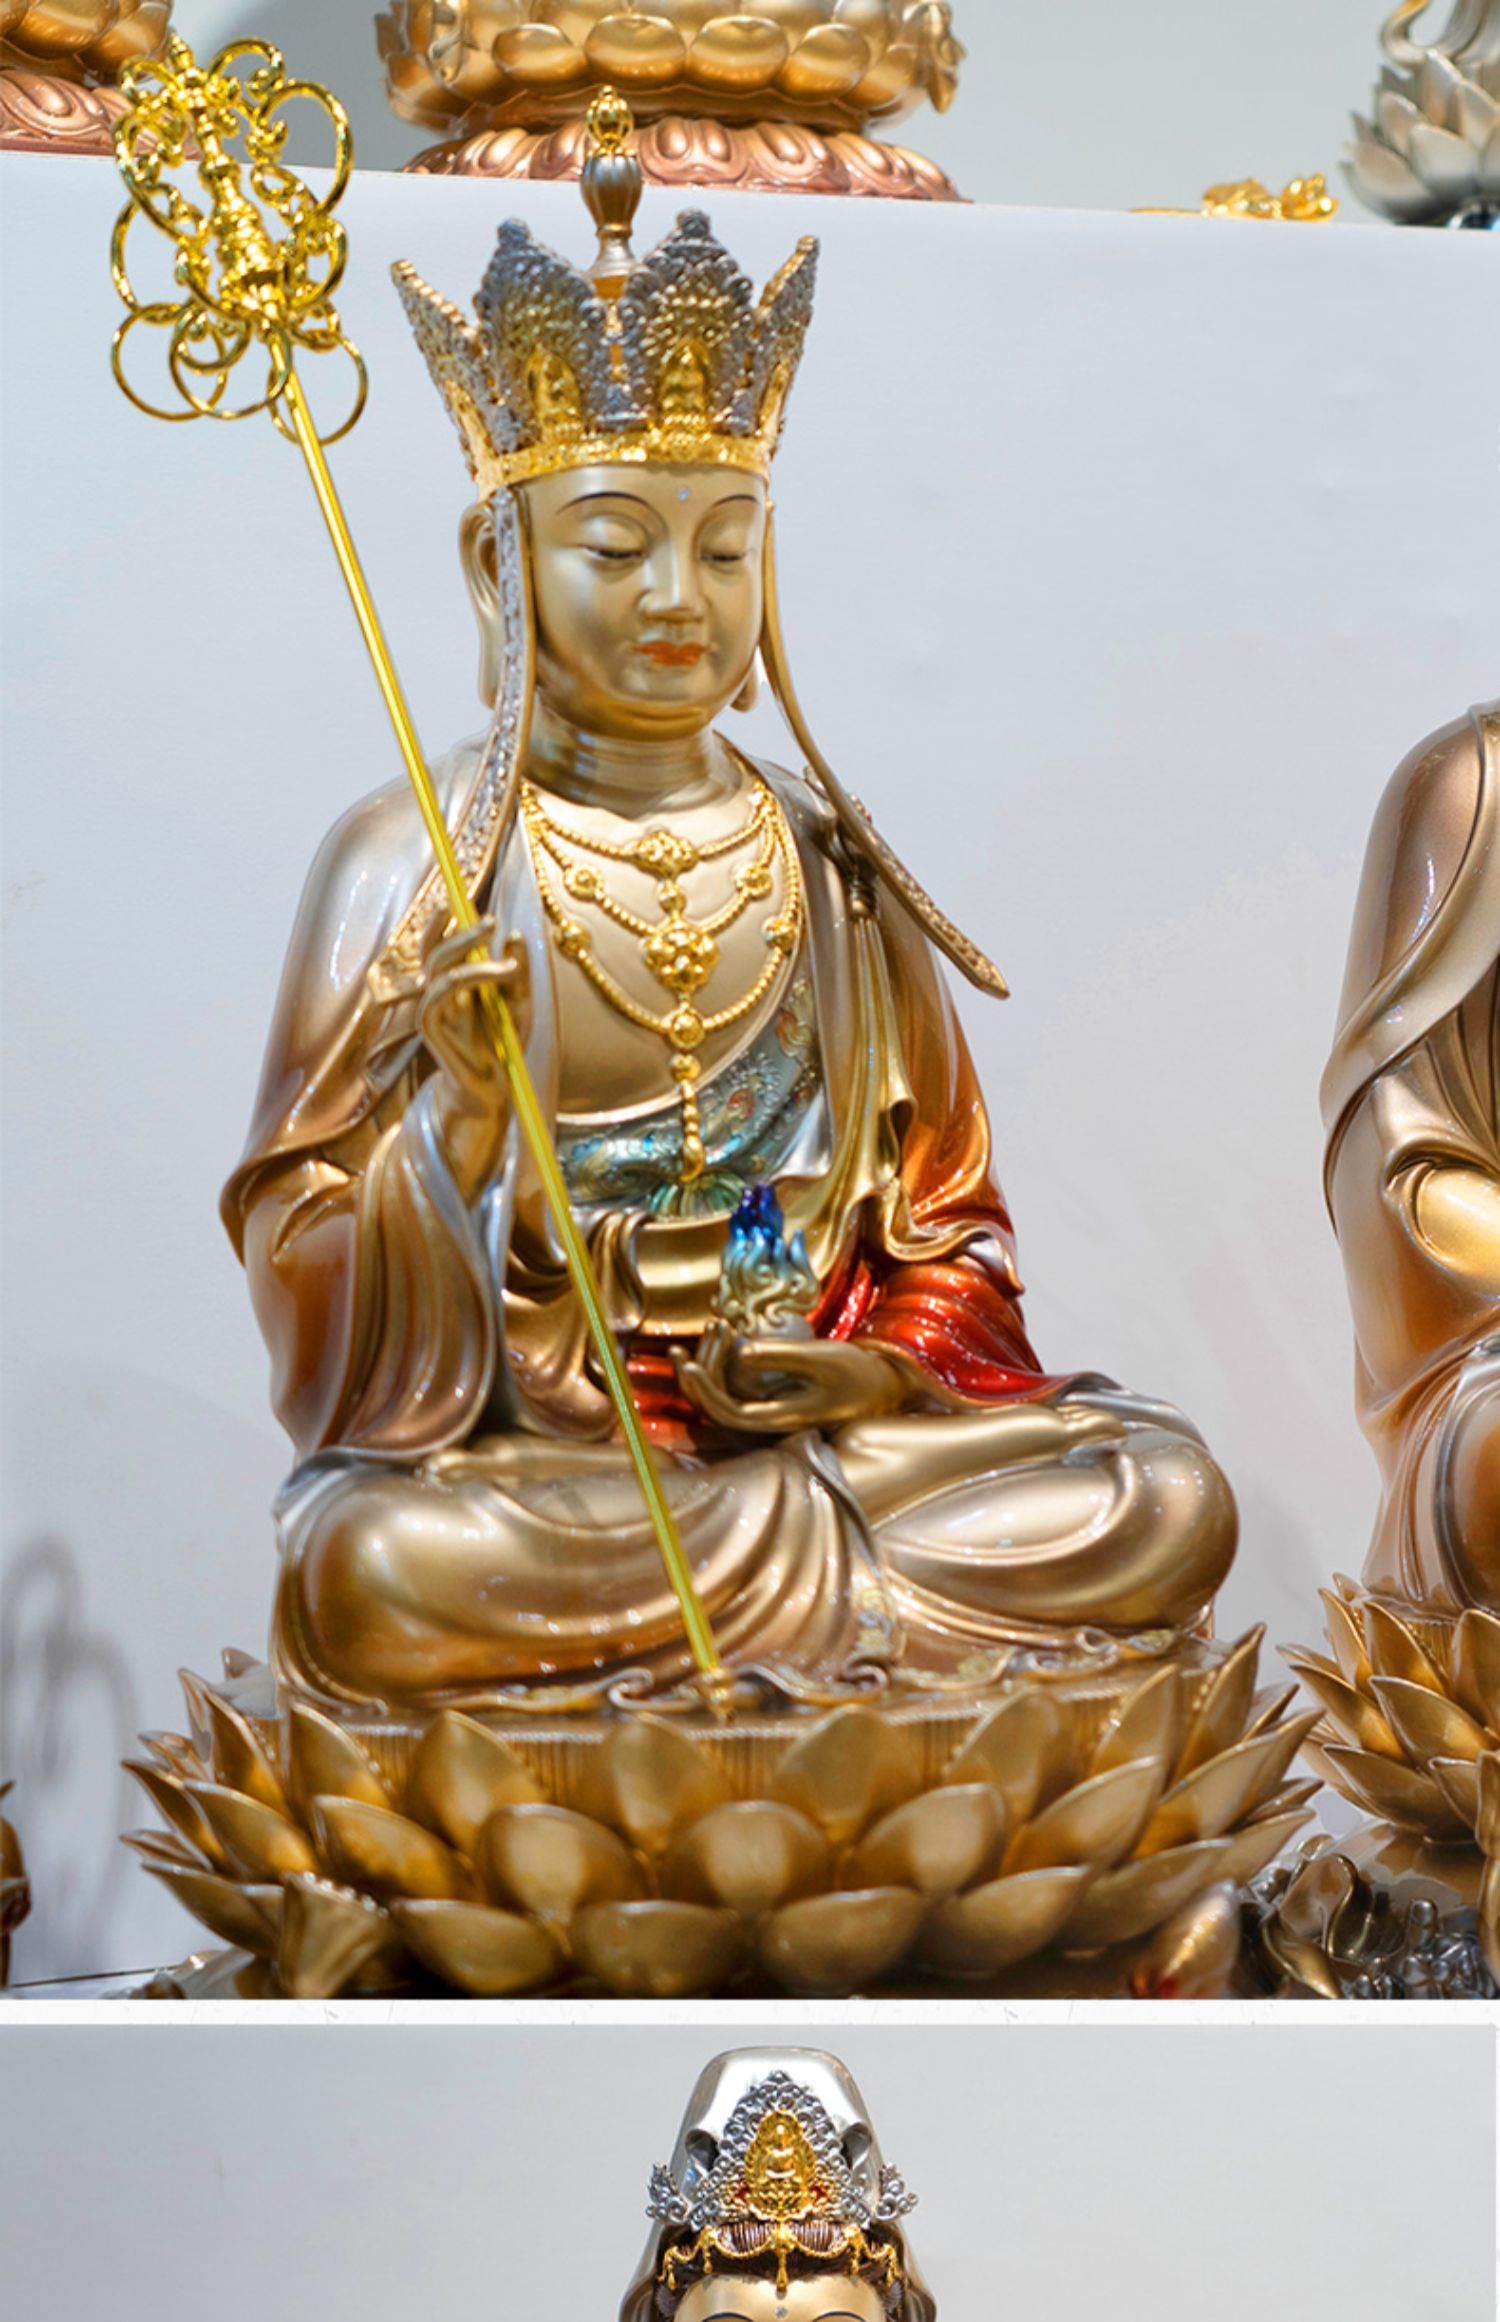 三漫陀娑婆三圣铜彩绘佛像释迦牟尼佛地藏王菩萨观世音菩萨像摆件